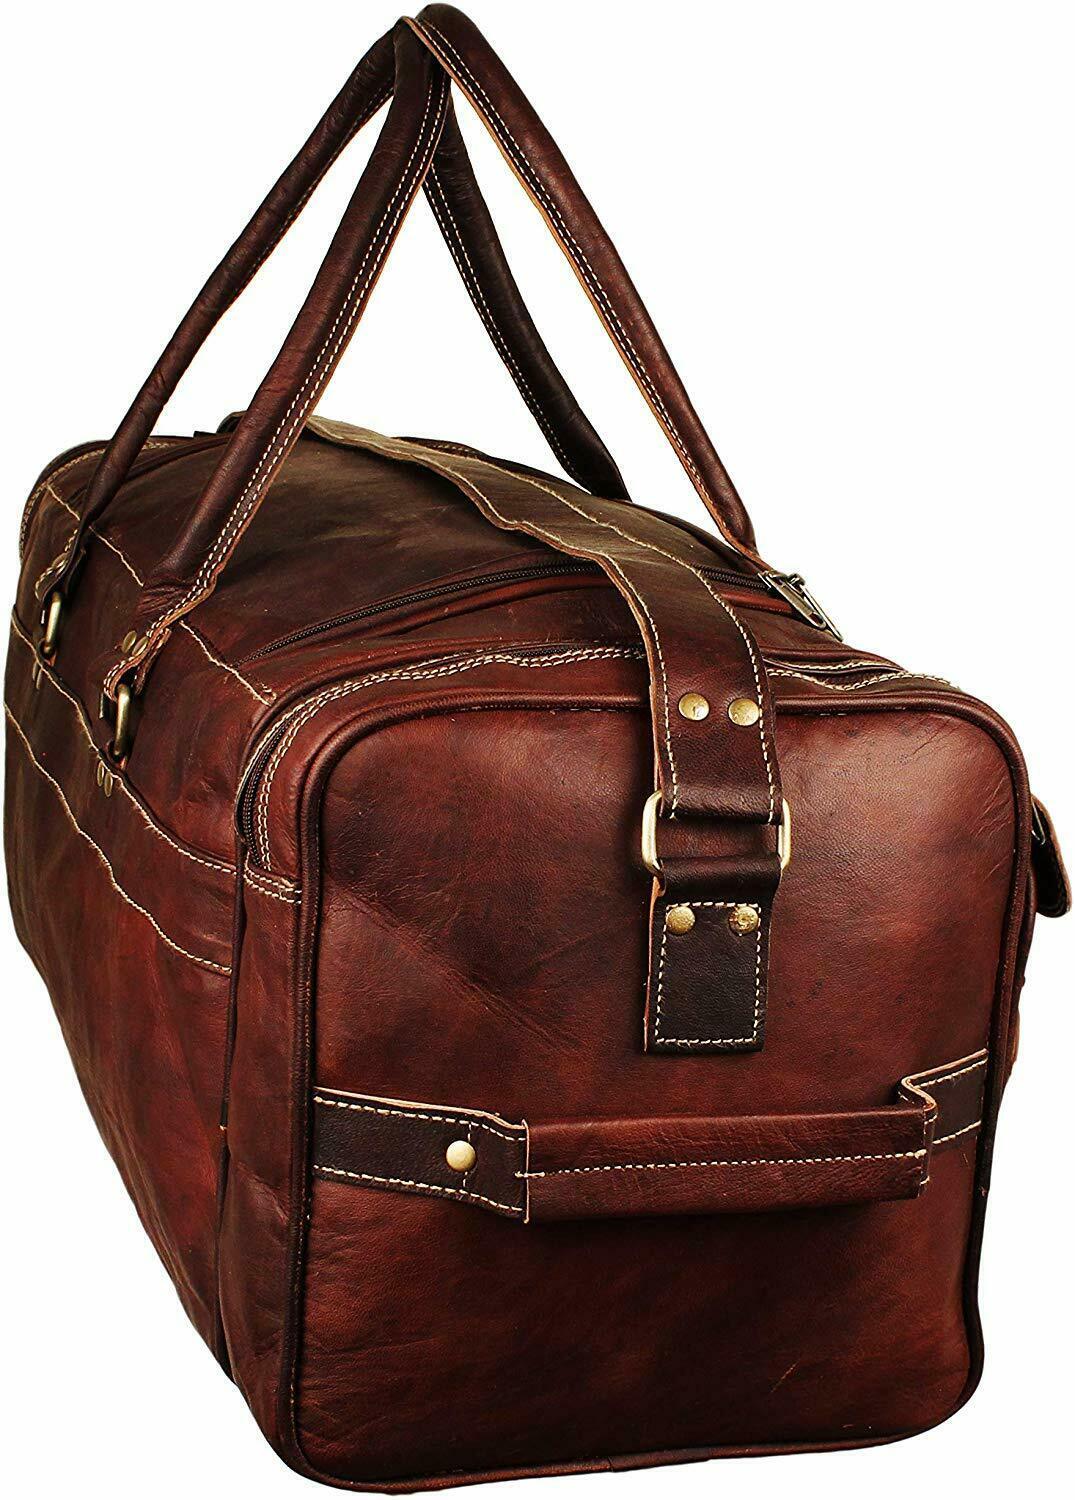 Handmade Genuine Leather Travel Duffel Bags For Women Weekender ...